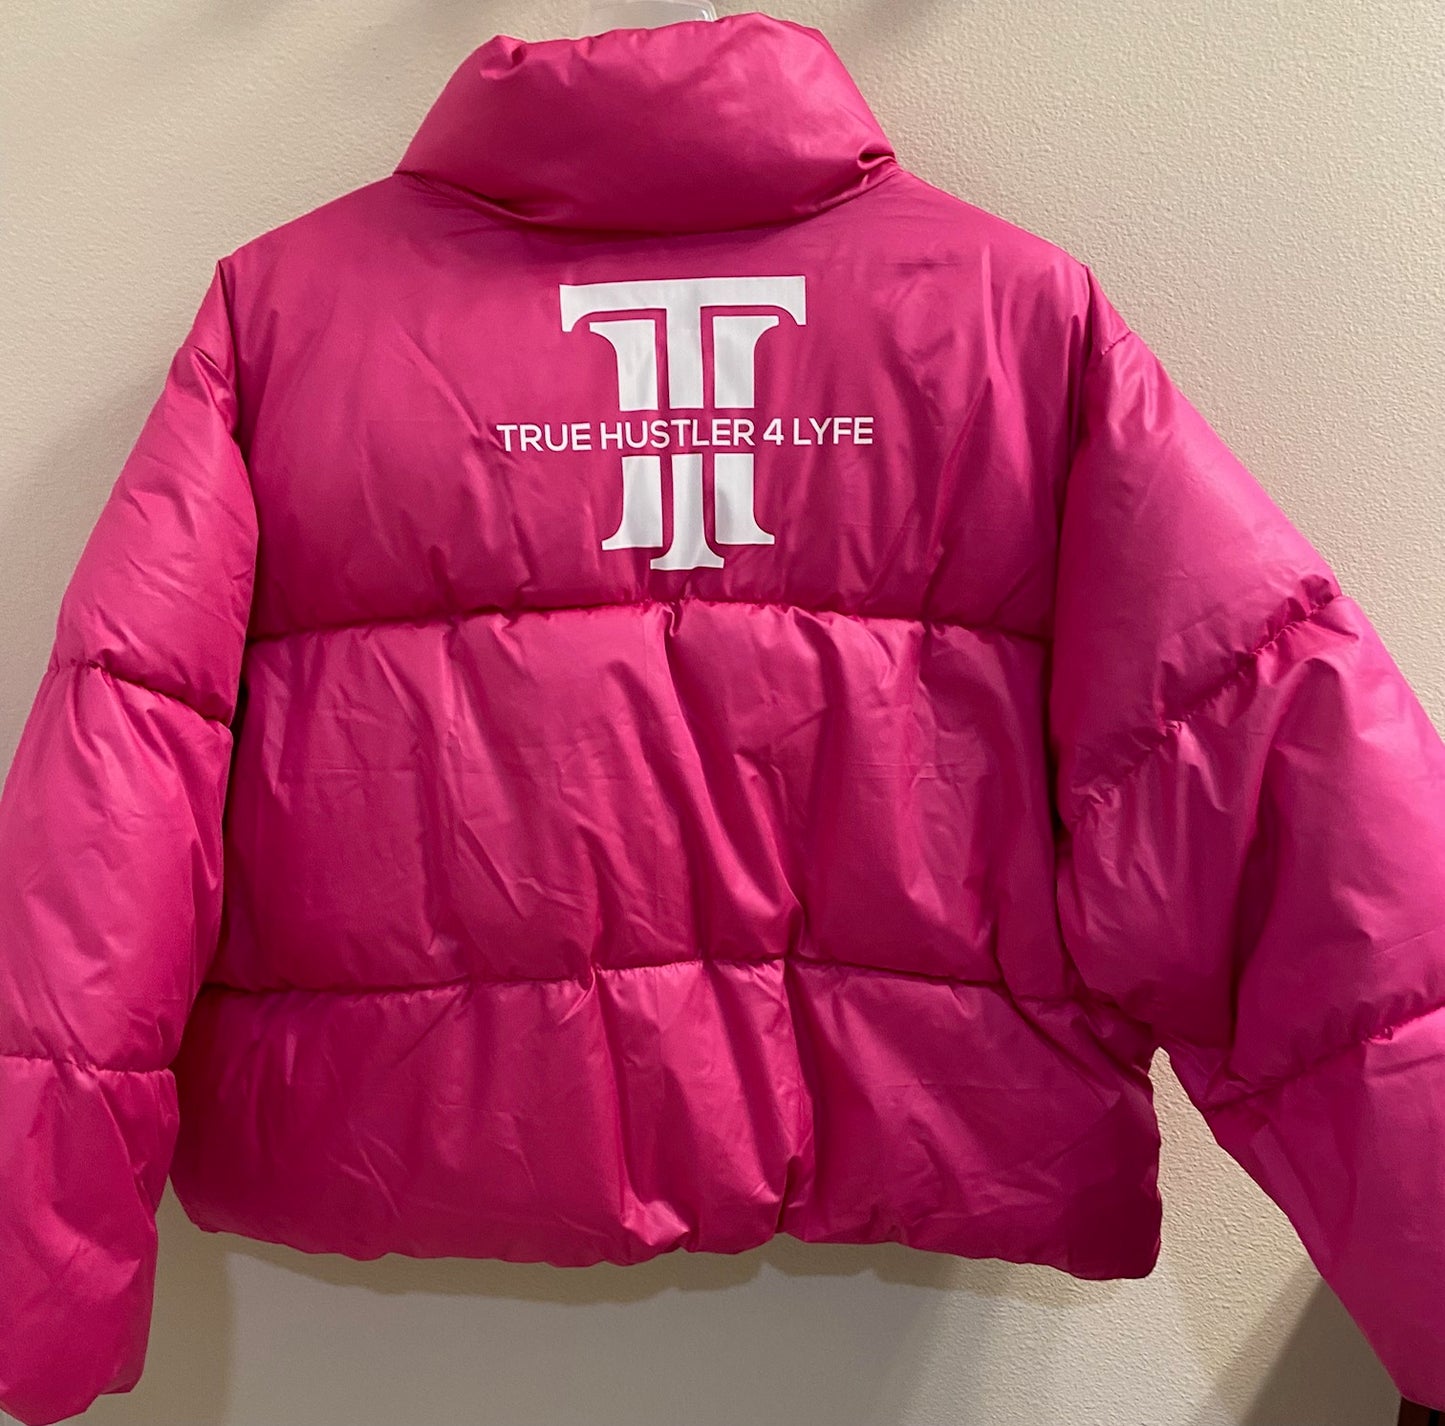 "True Hustler 4 Lyfe: Elite Cropped Puffer Jacket for Women"-Hot Pink